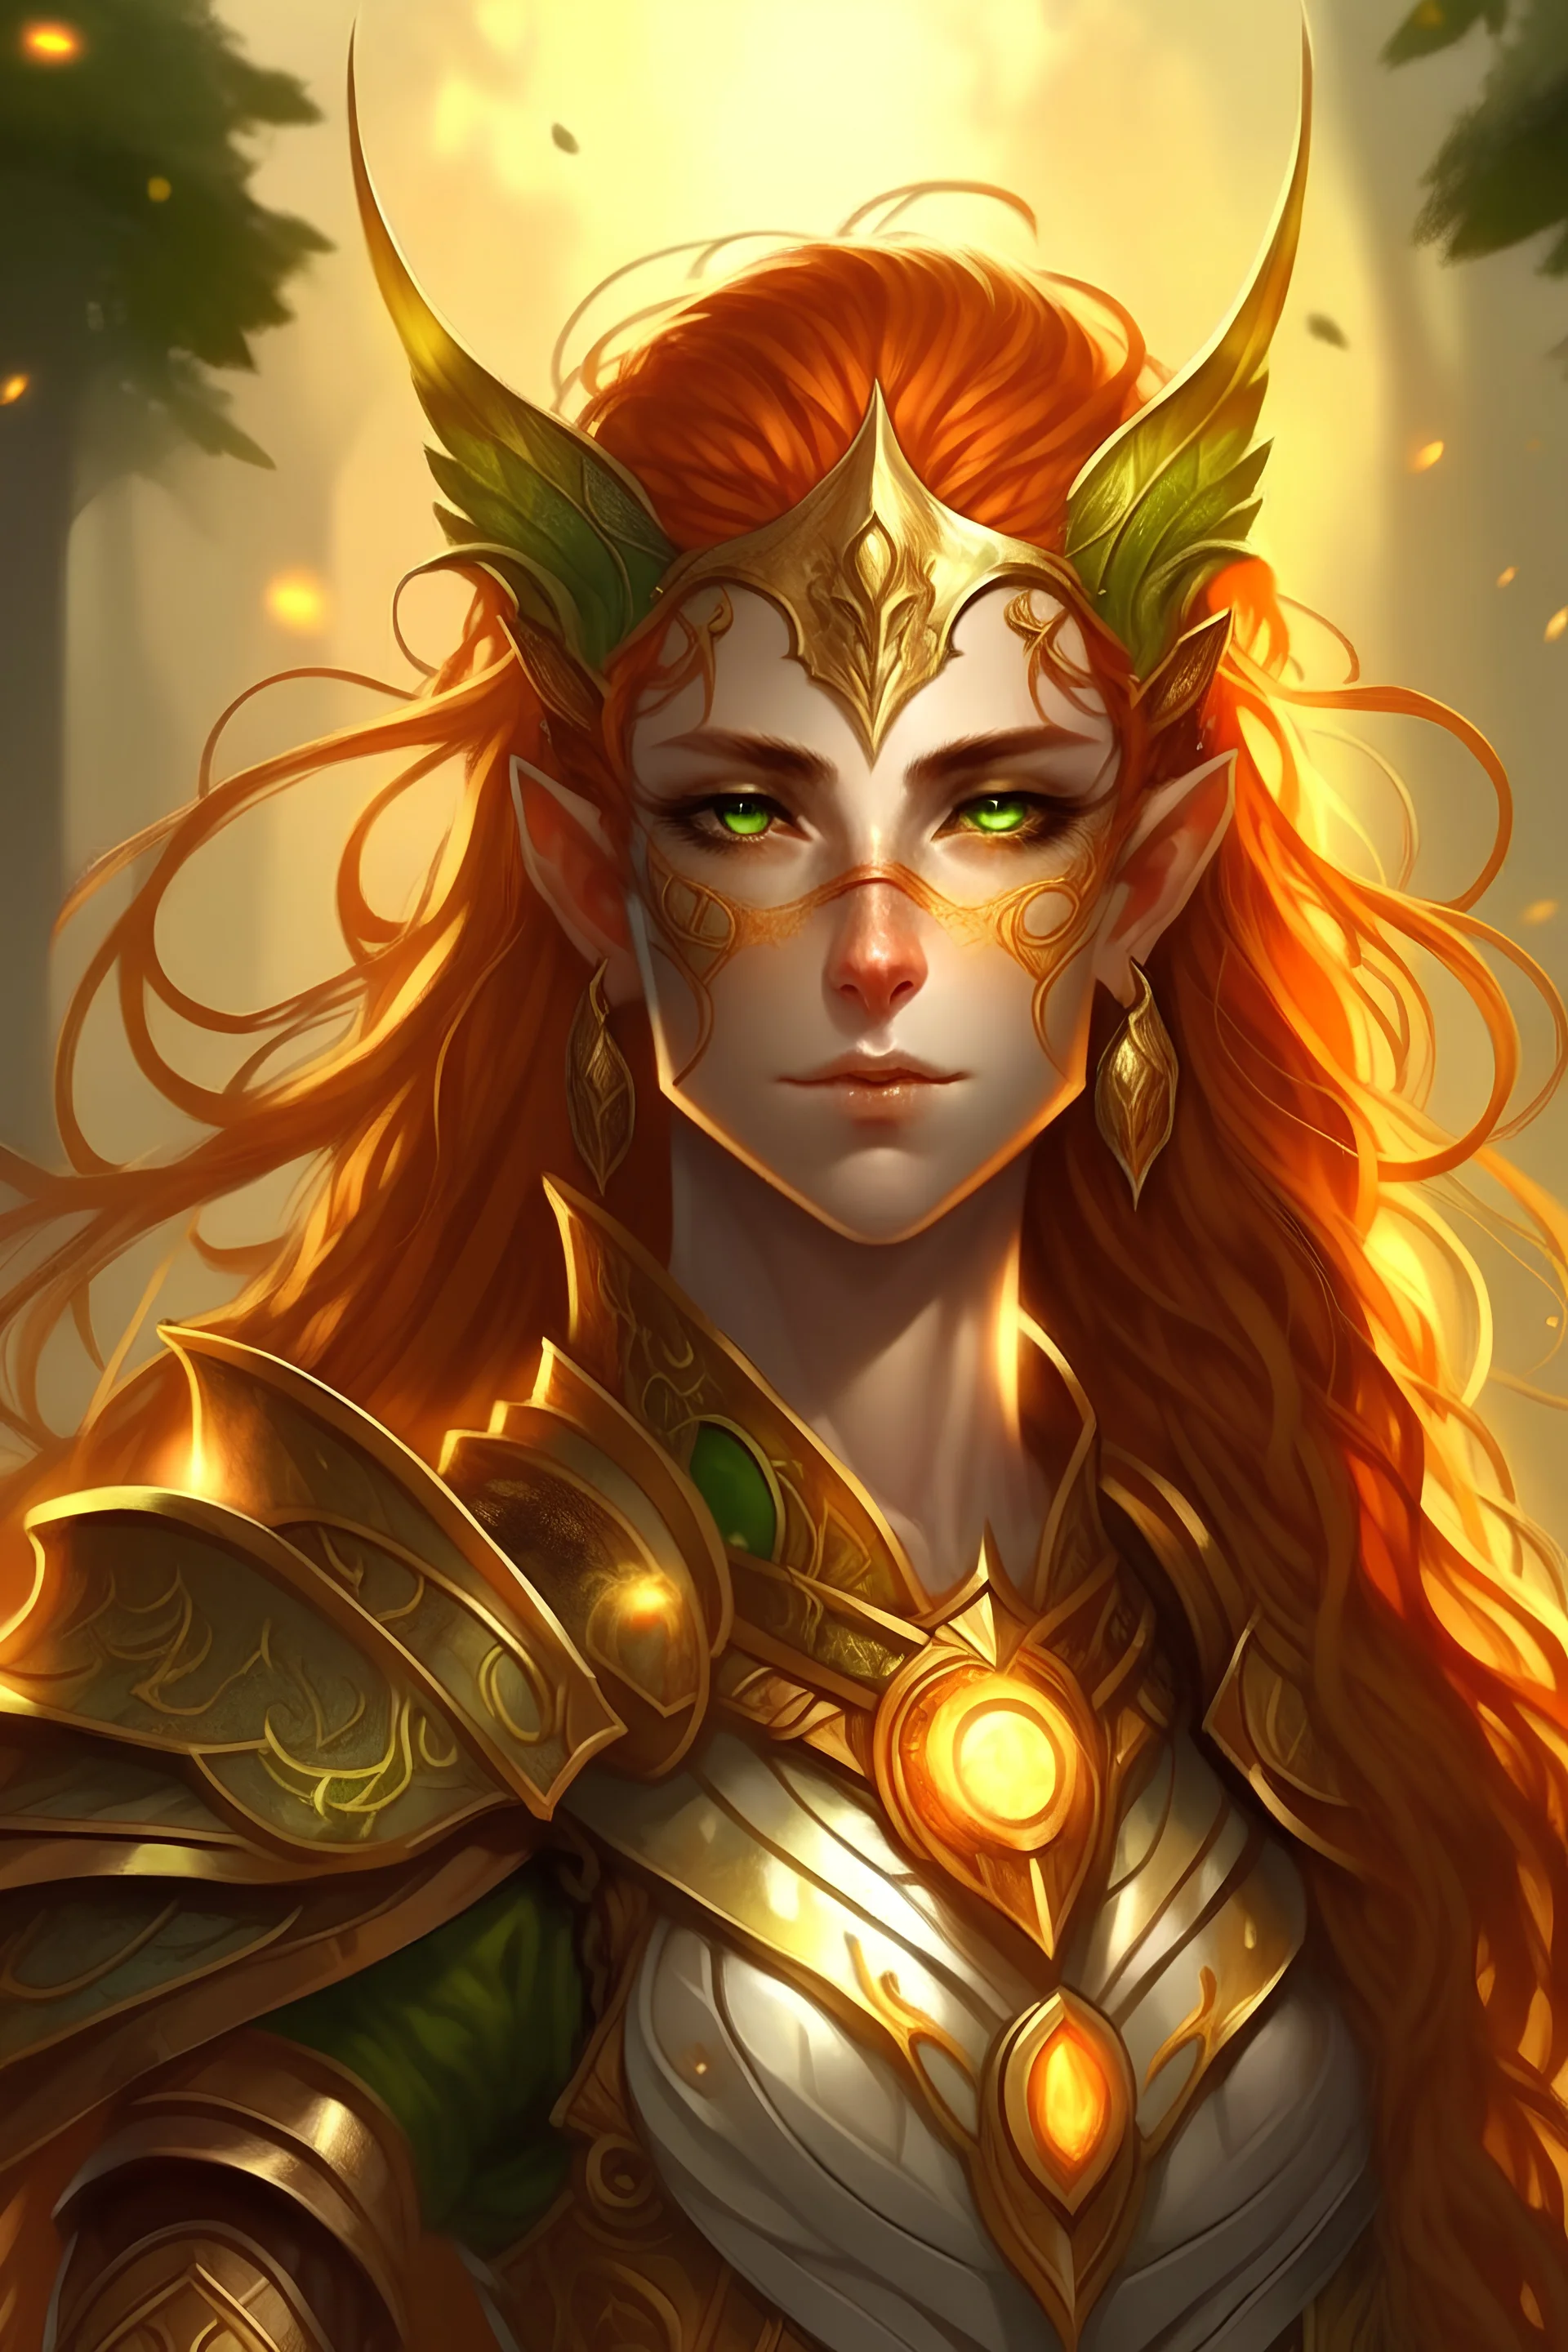 Sun elf Bladesinger wizard copper hair gold eyes looking fierce but calm